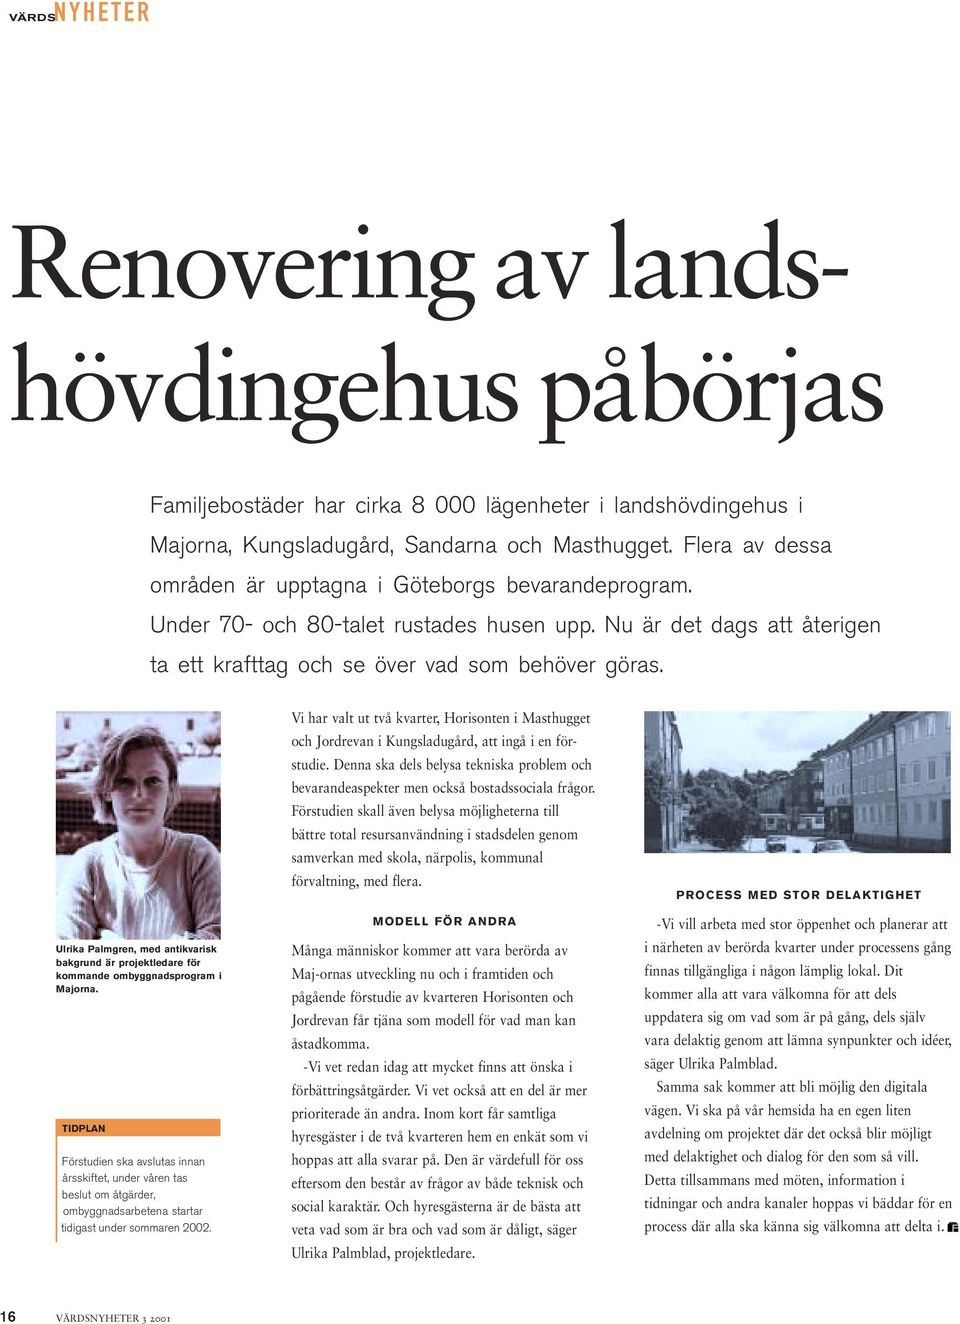 Ulrika Palmgren, med antikvarisk bakgrund är projektledare för kommande ombyggnadsprogram i Majorna.